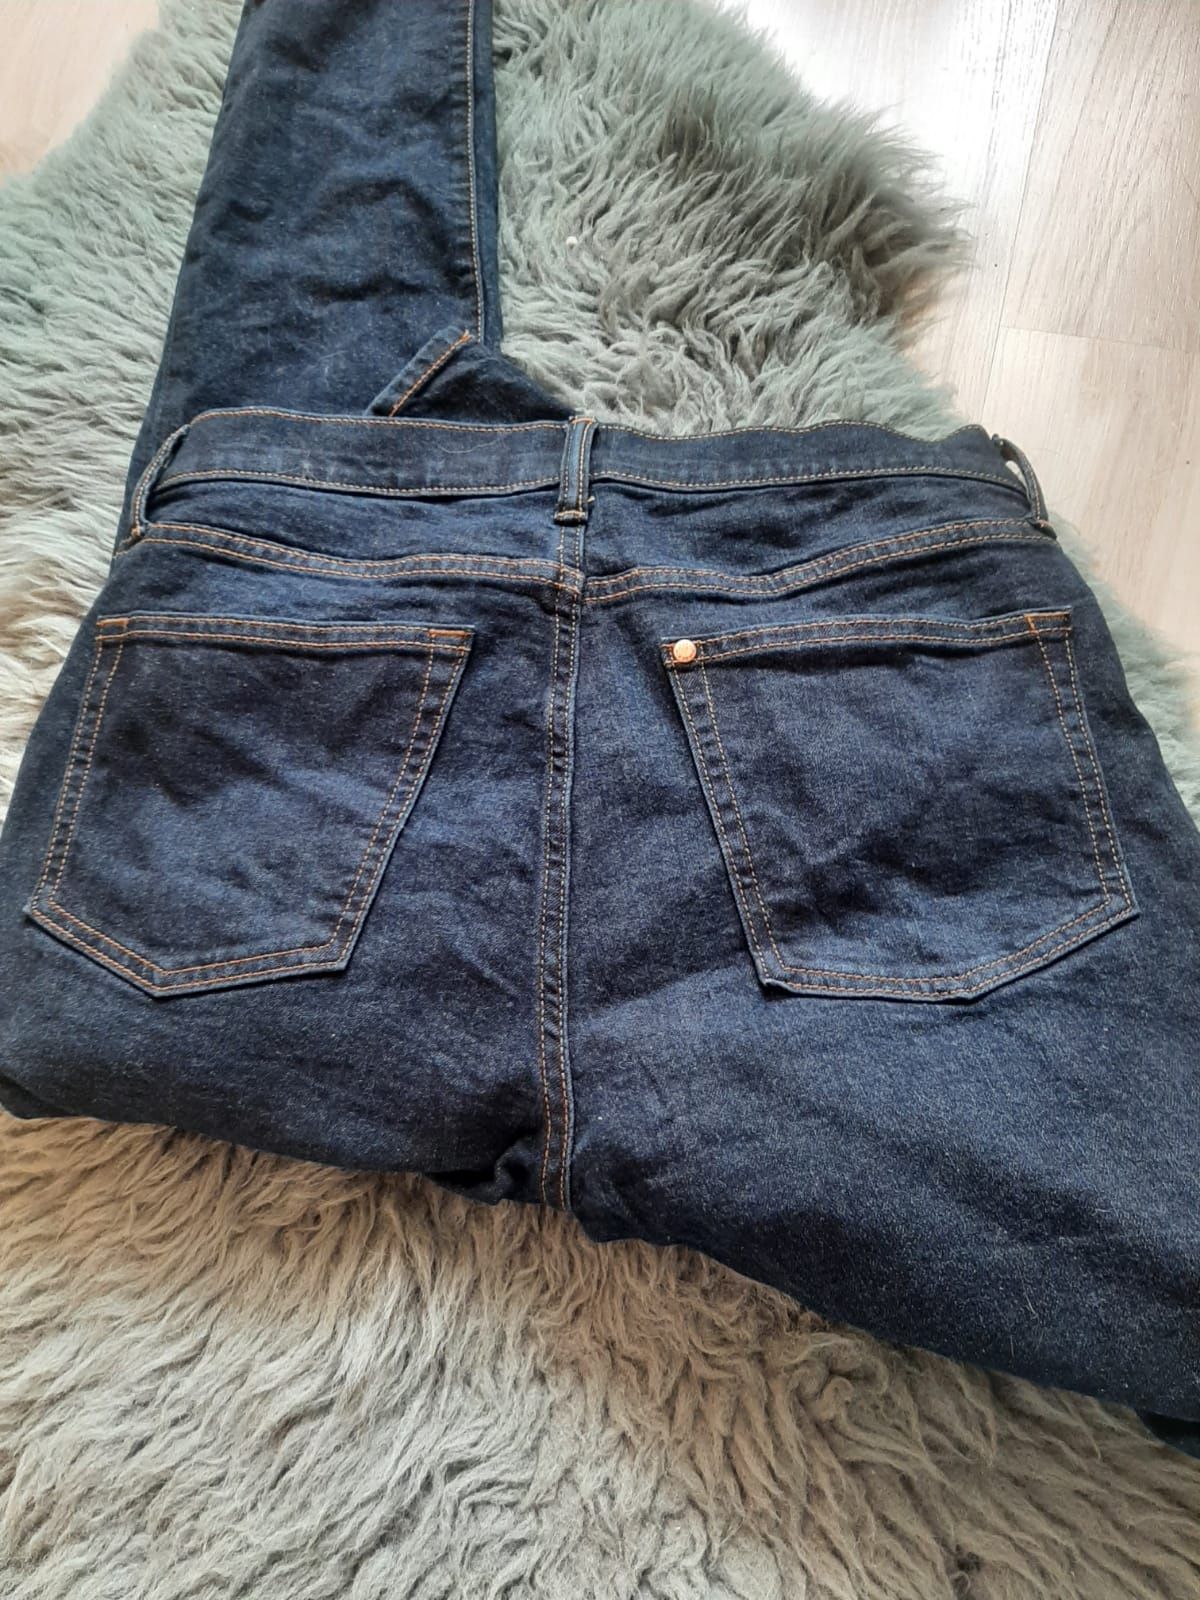 Spodnie jeansowe męskie granatowe skinny. Rozmiar 34/32